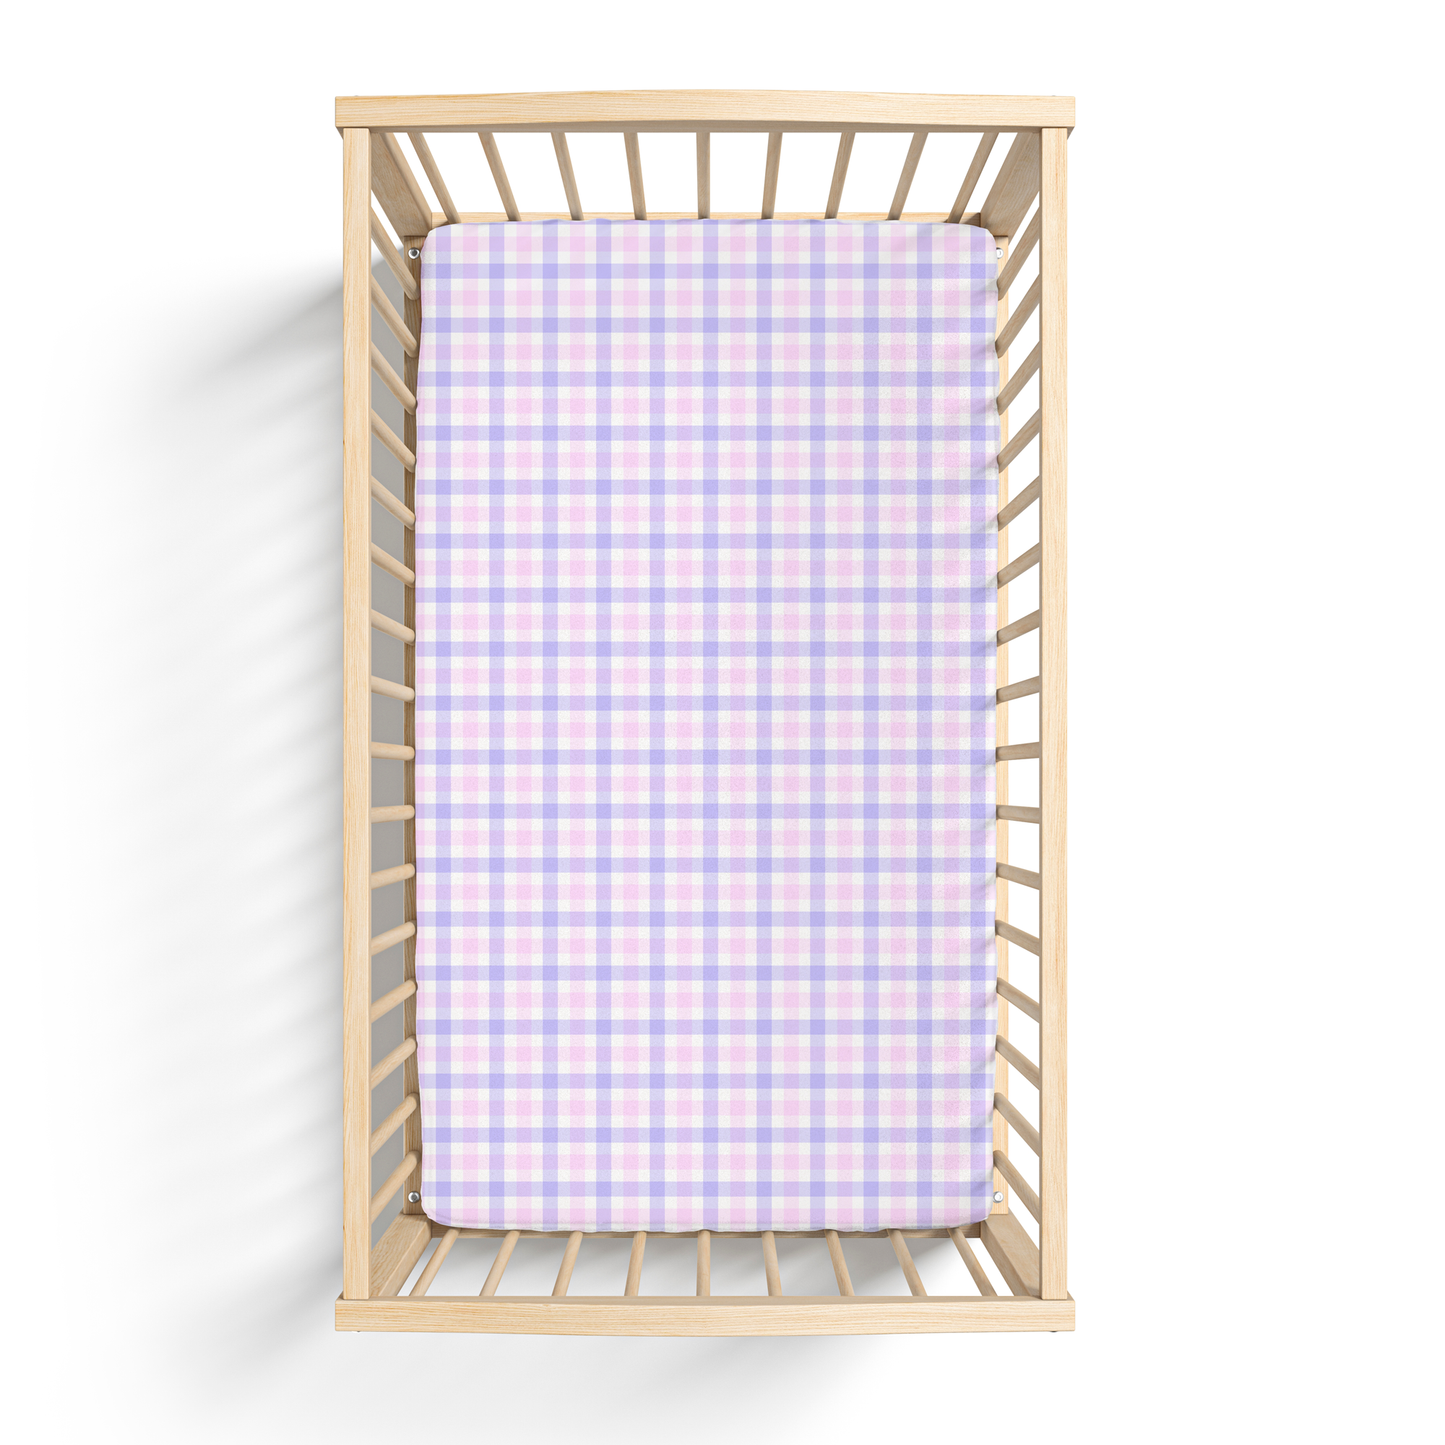 Girly Plaid Crib Sheet